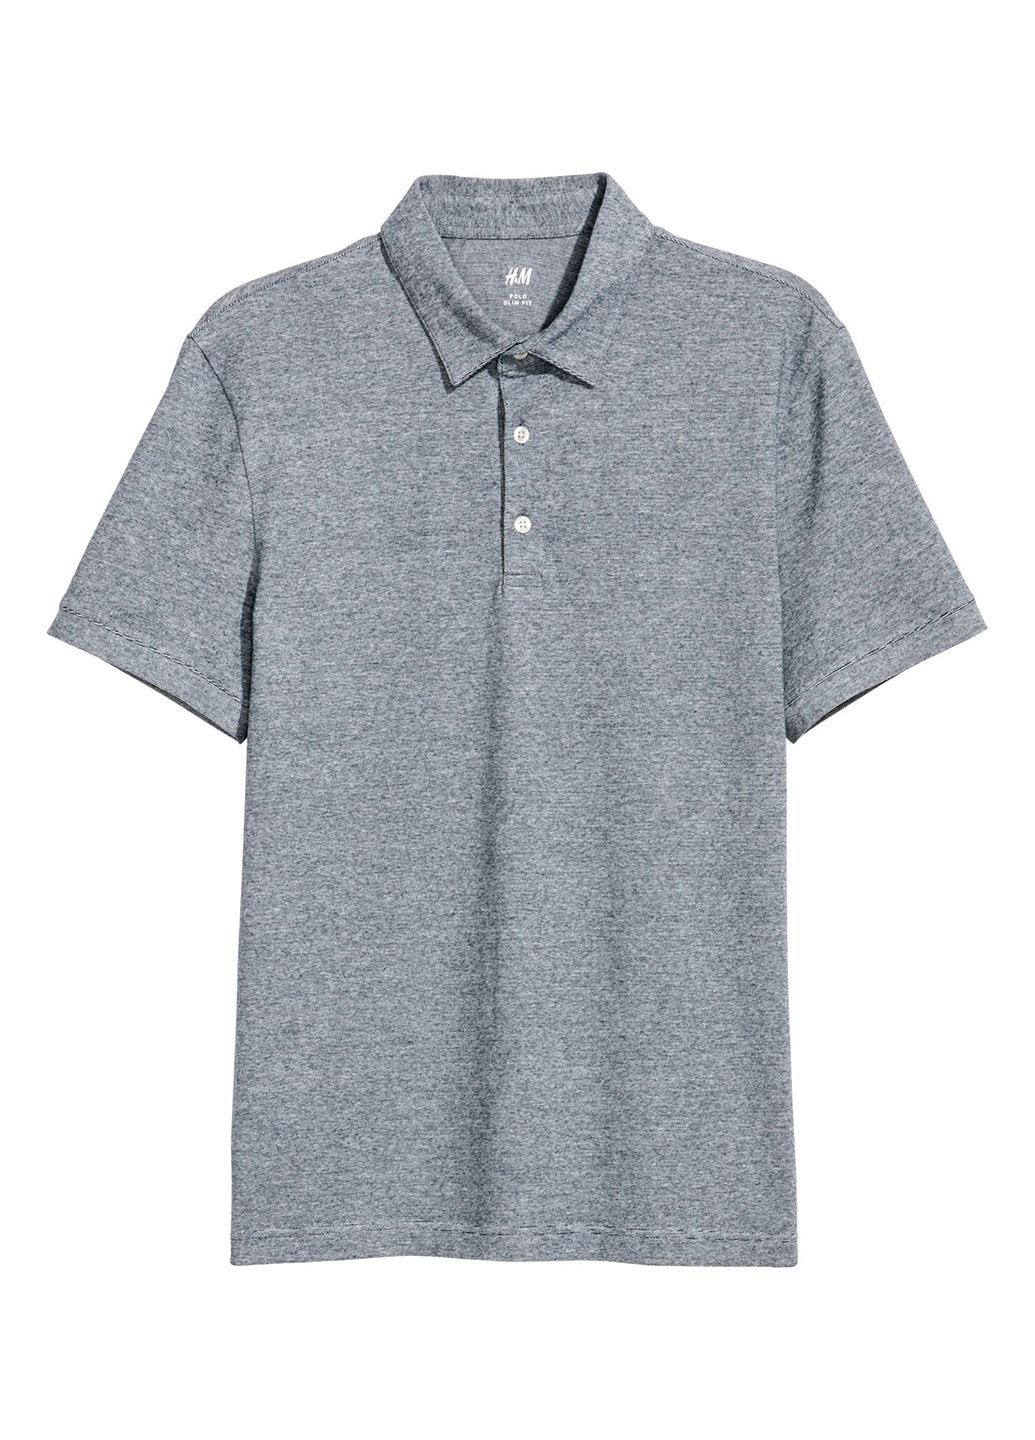 Серо-синяя футболка-поло для мужчин H&M меланжевая